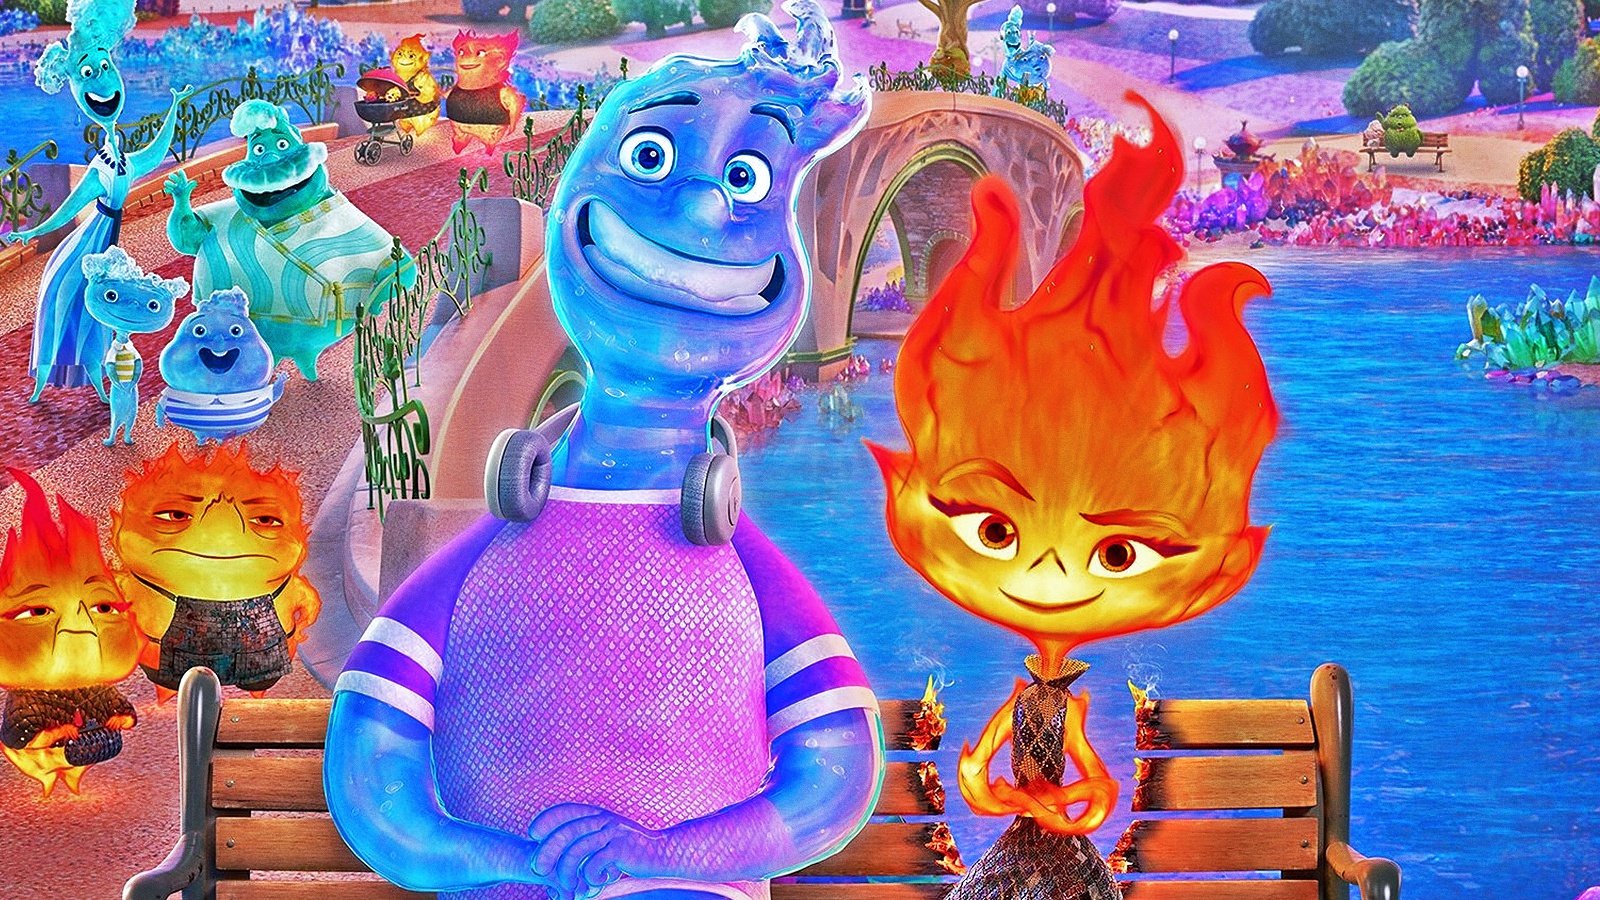 Al momento stai visualizzando Elemental in Streaming Gratis: Un’Analisi Dettagliata del Nuovo Film Pixar